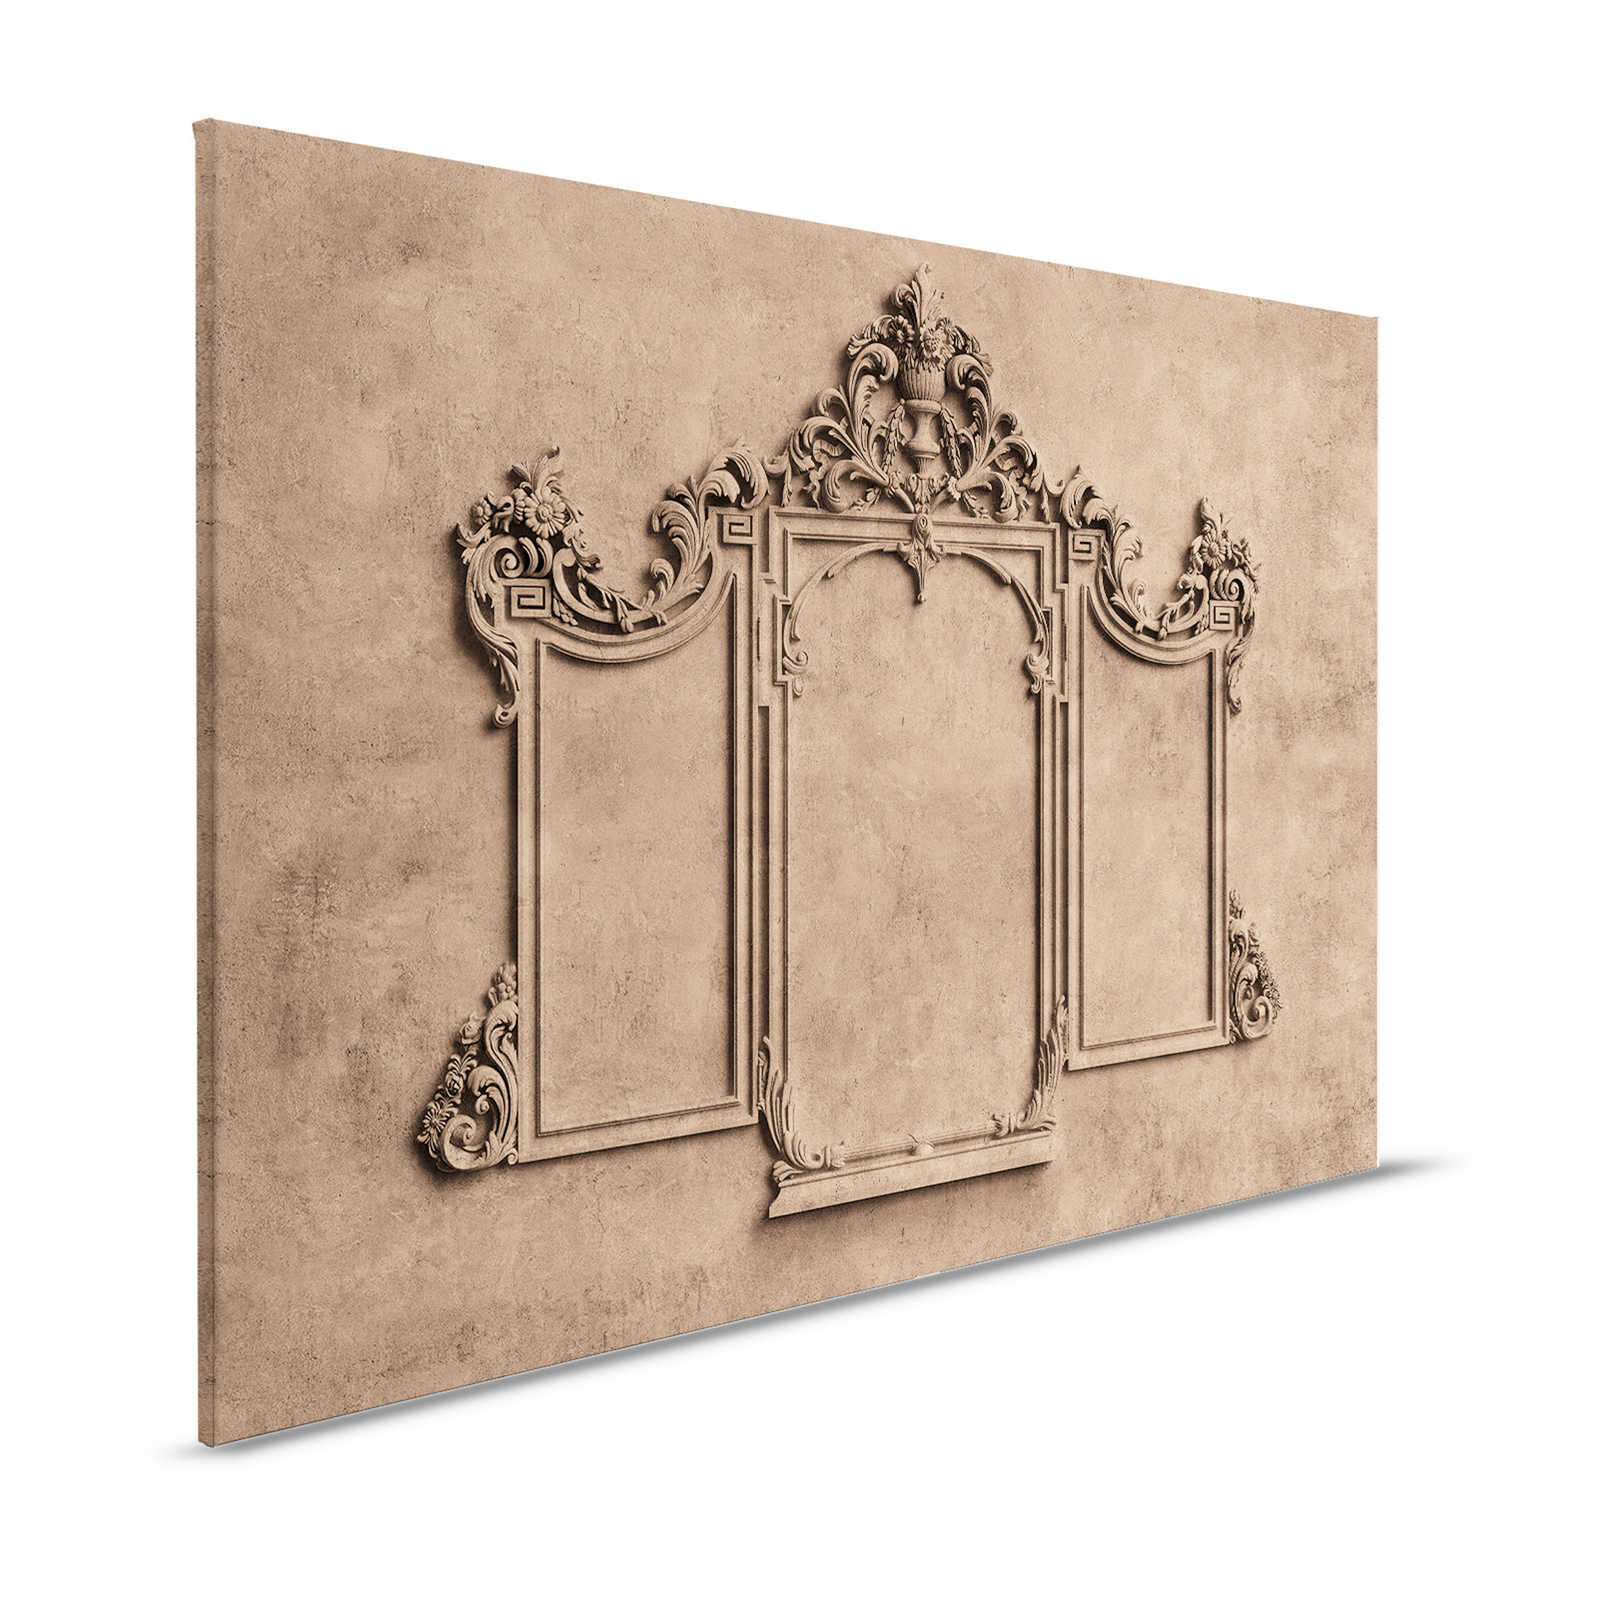 Lyon 1 - Toile 3D cadre stuc & aspect plâtre marron - 1,20 m x 0,80 m
